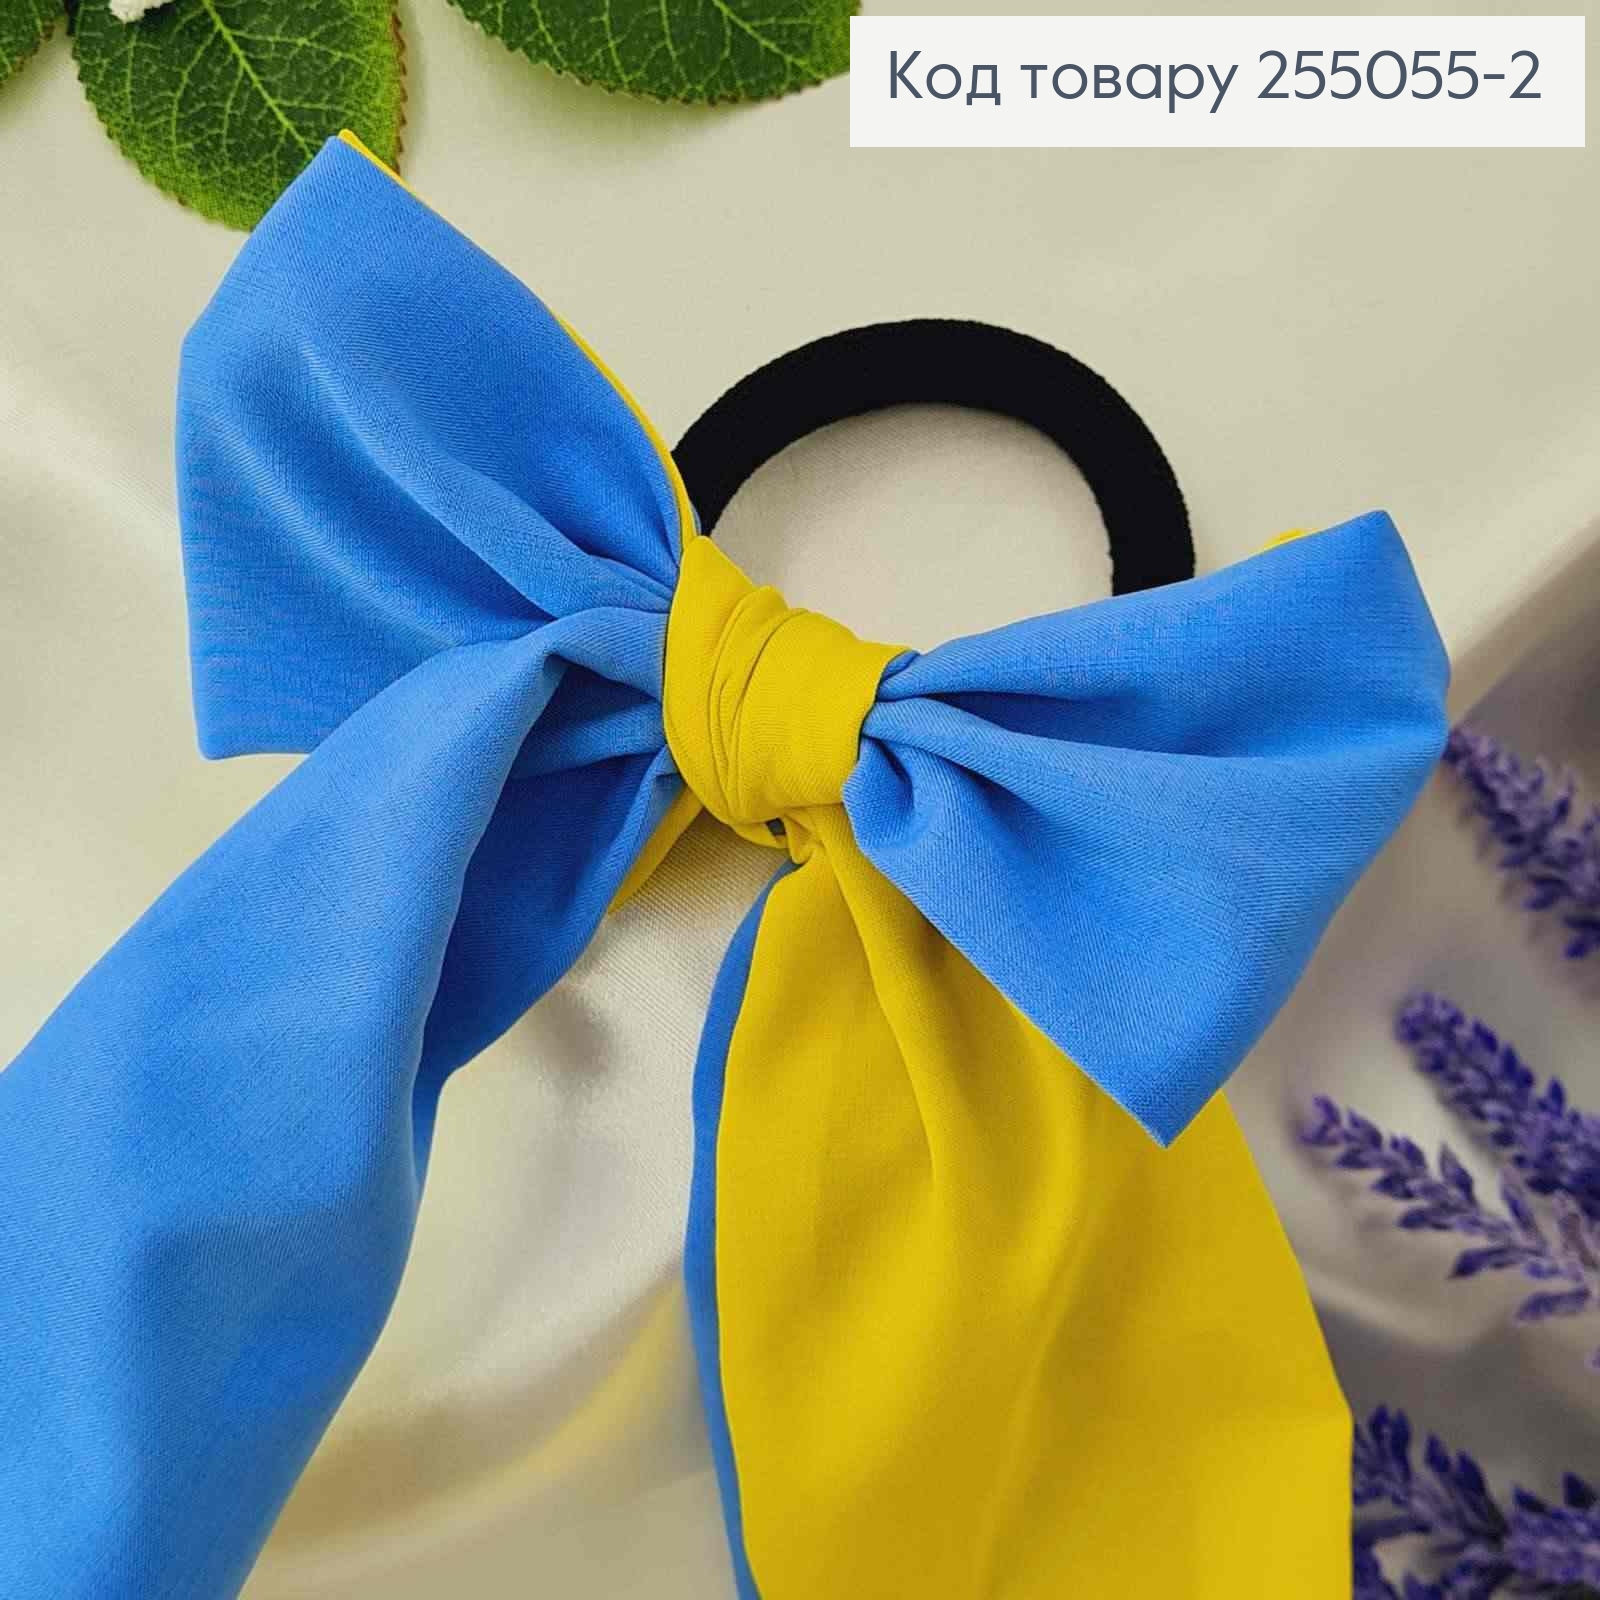 Резинка 5см, Твилли, Бант желто-голубой 12*28см, (ручная работа,Украина) 255055-2 фото 2